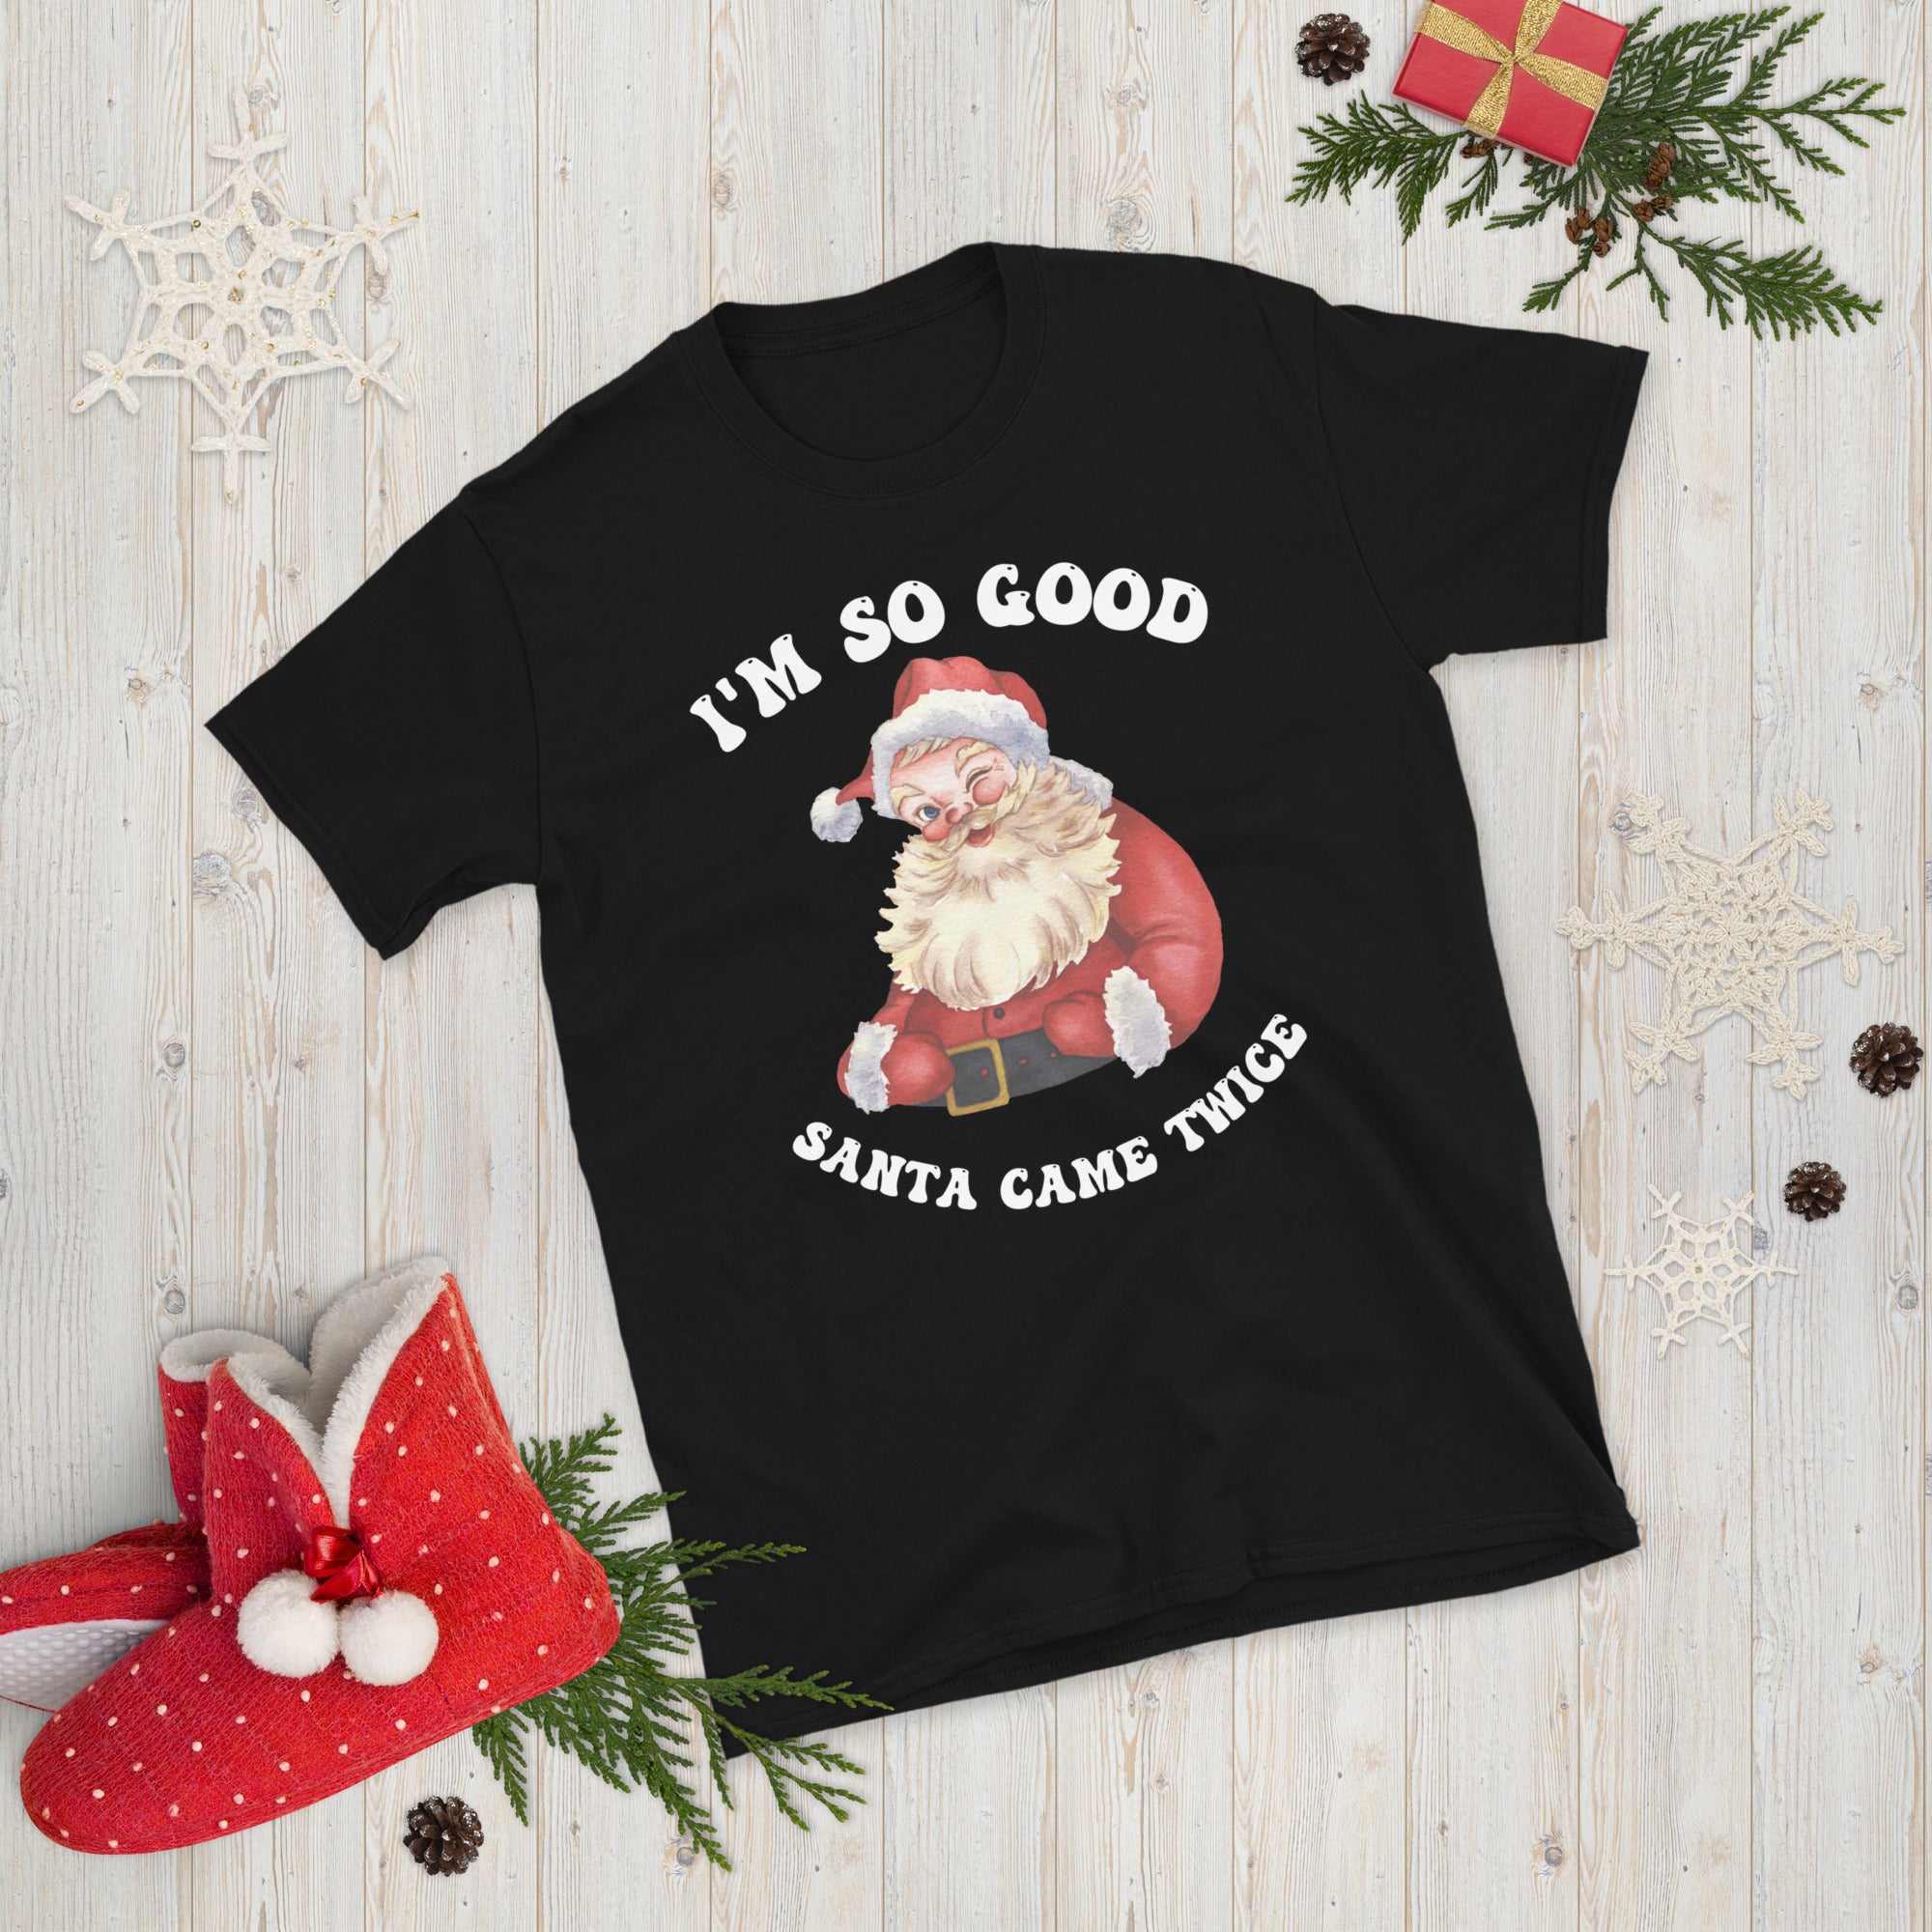 Naughty Couple Christmas Shirts, I&#39;m So Good Santa Came Twice Shirt, Couples Ugly Christmas Tees, Groovy Christmas Gifts, Xmas Adult Humour